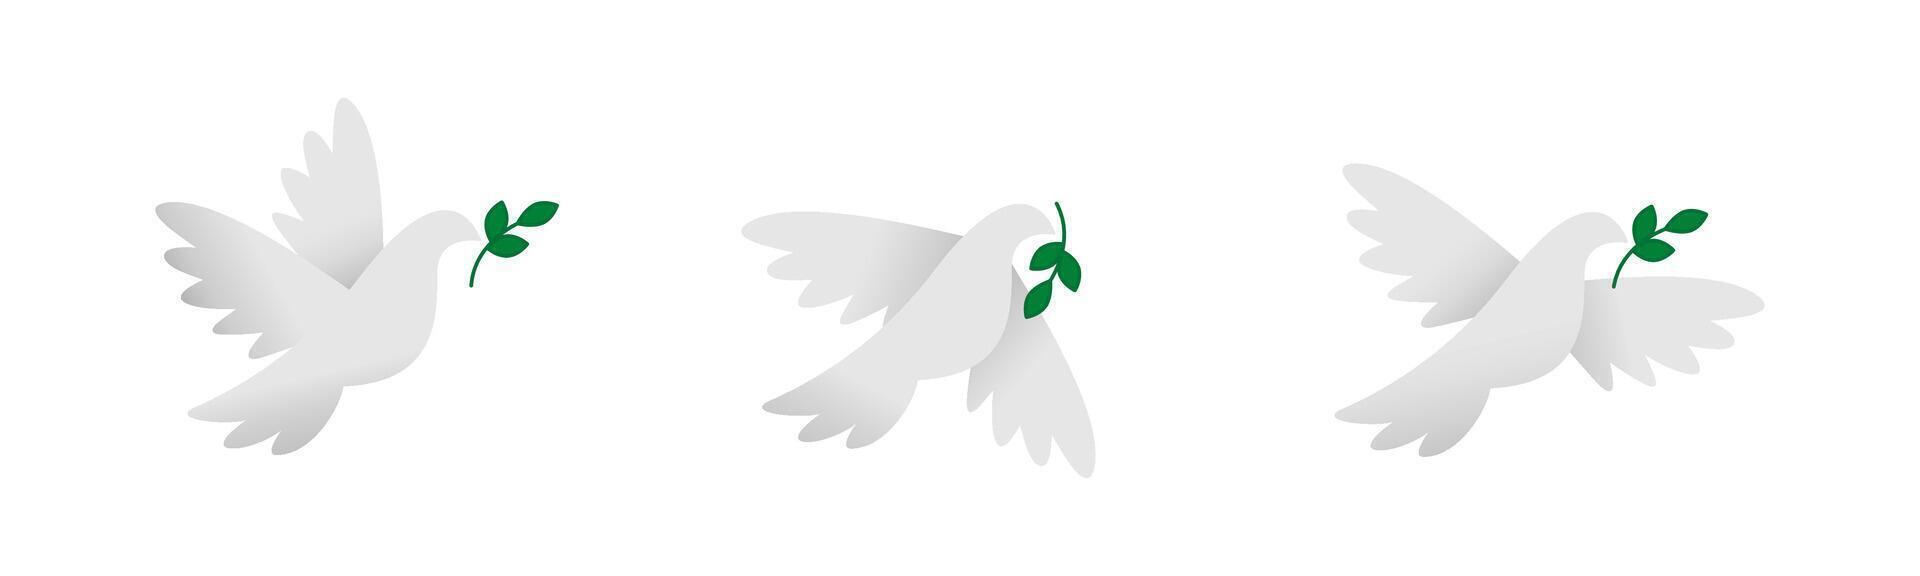 duif pictogrammen. vrede duif. duiven van vrede. vliegend duif. duif met Afdeling. vector